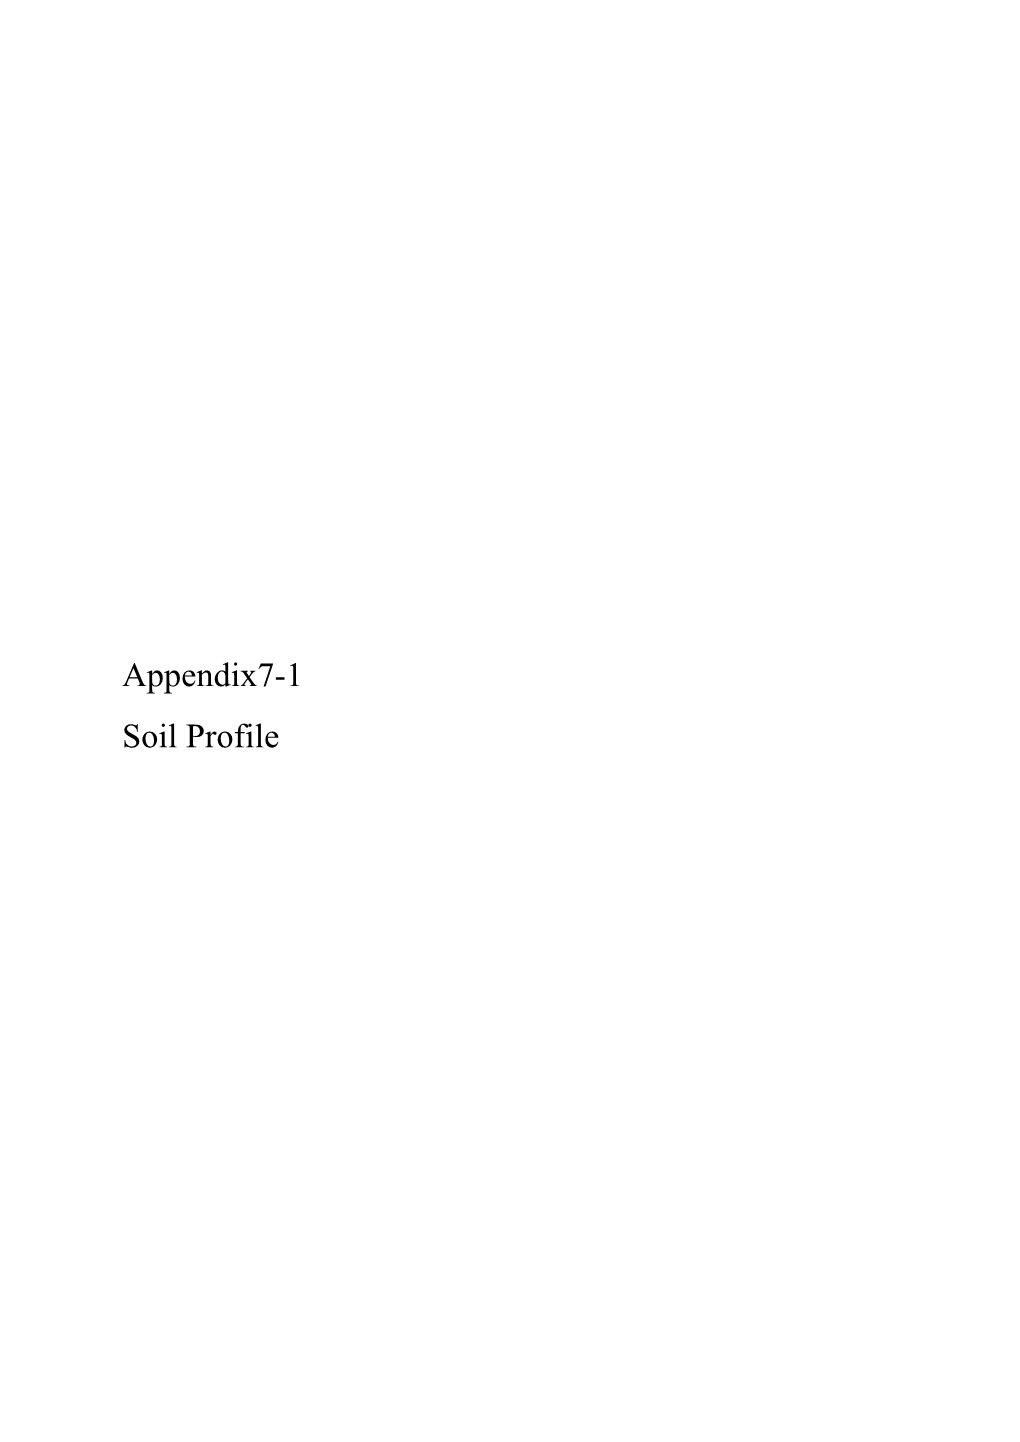 Appendix7-1 Soil Profile